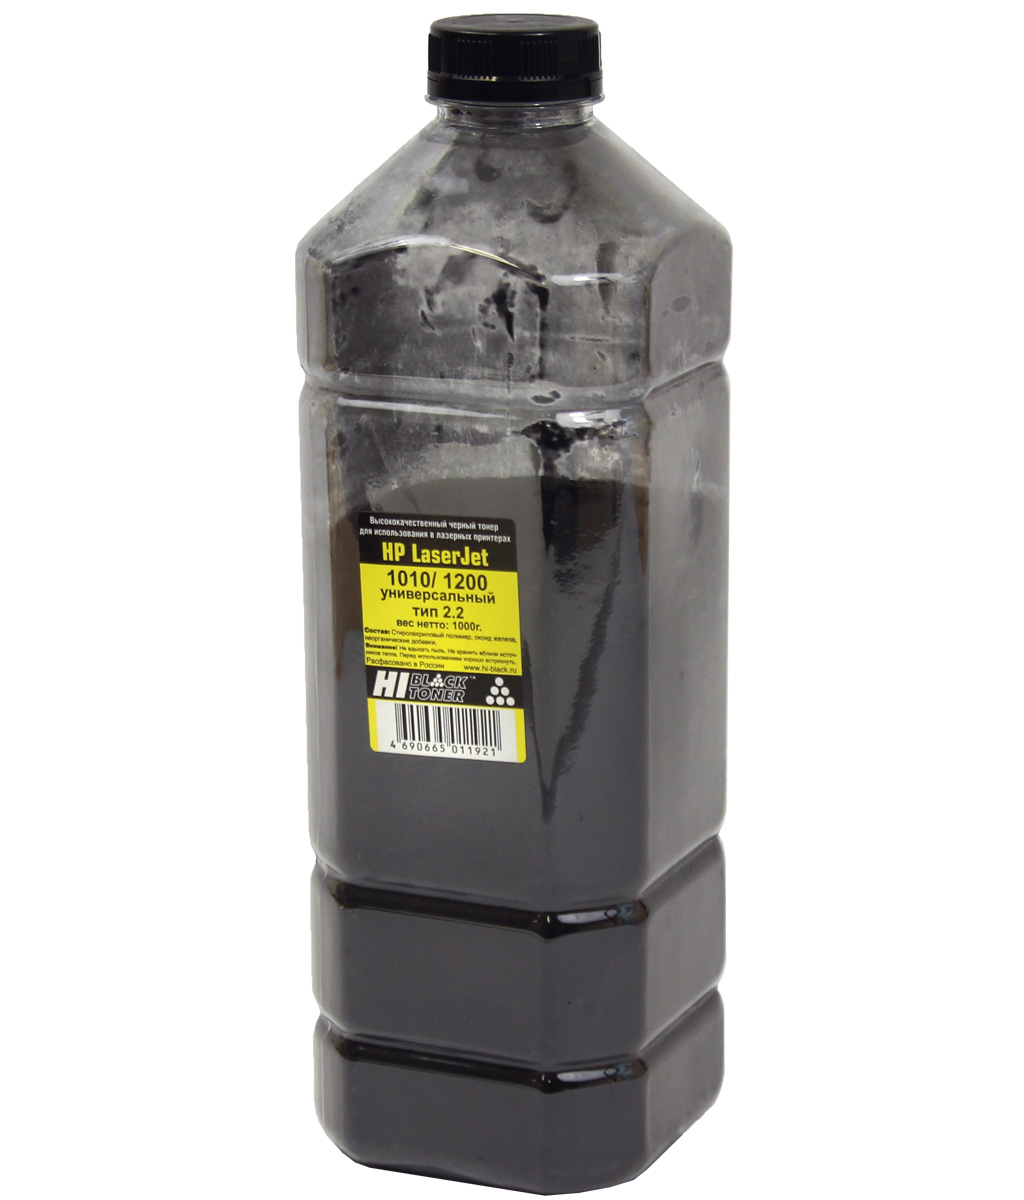 Тонер универсальный Hi-Black (Тип 2.2) для HP LJ 1010/ 1200, чёрный, 1 кг.